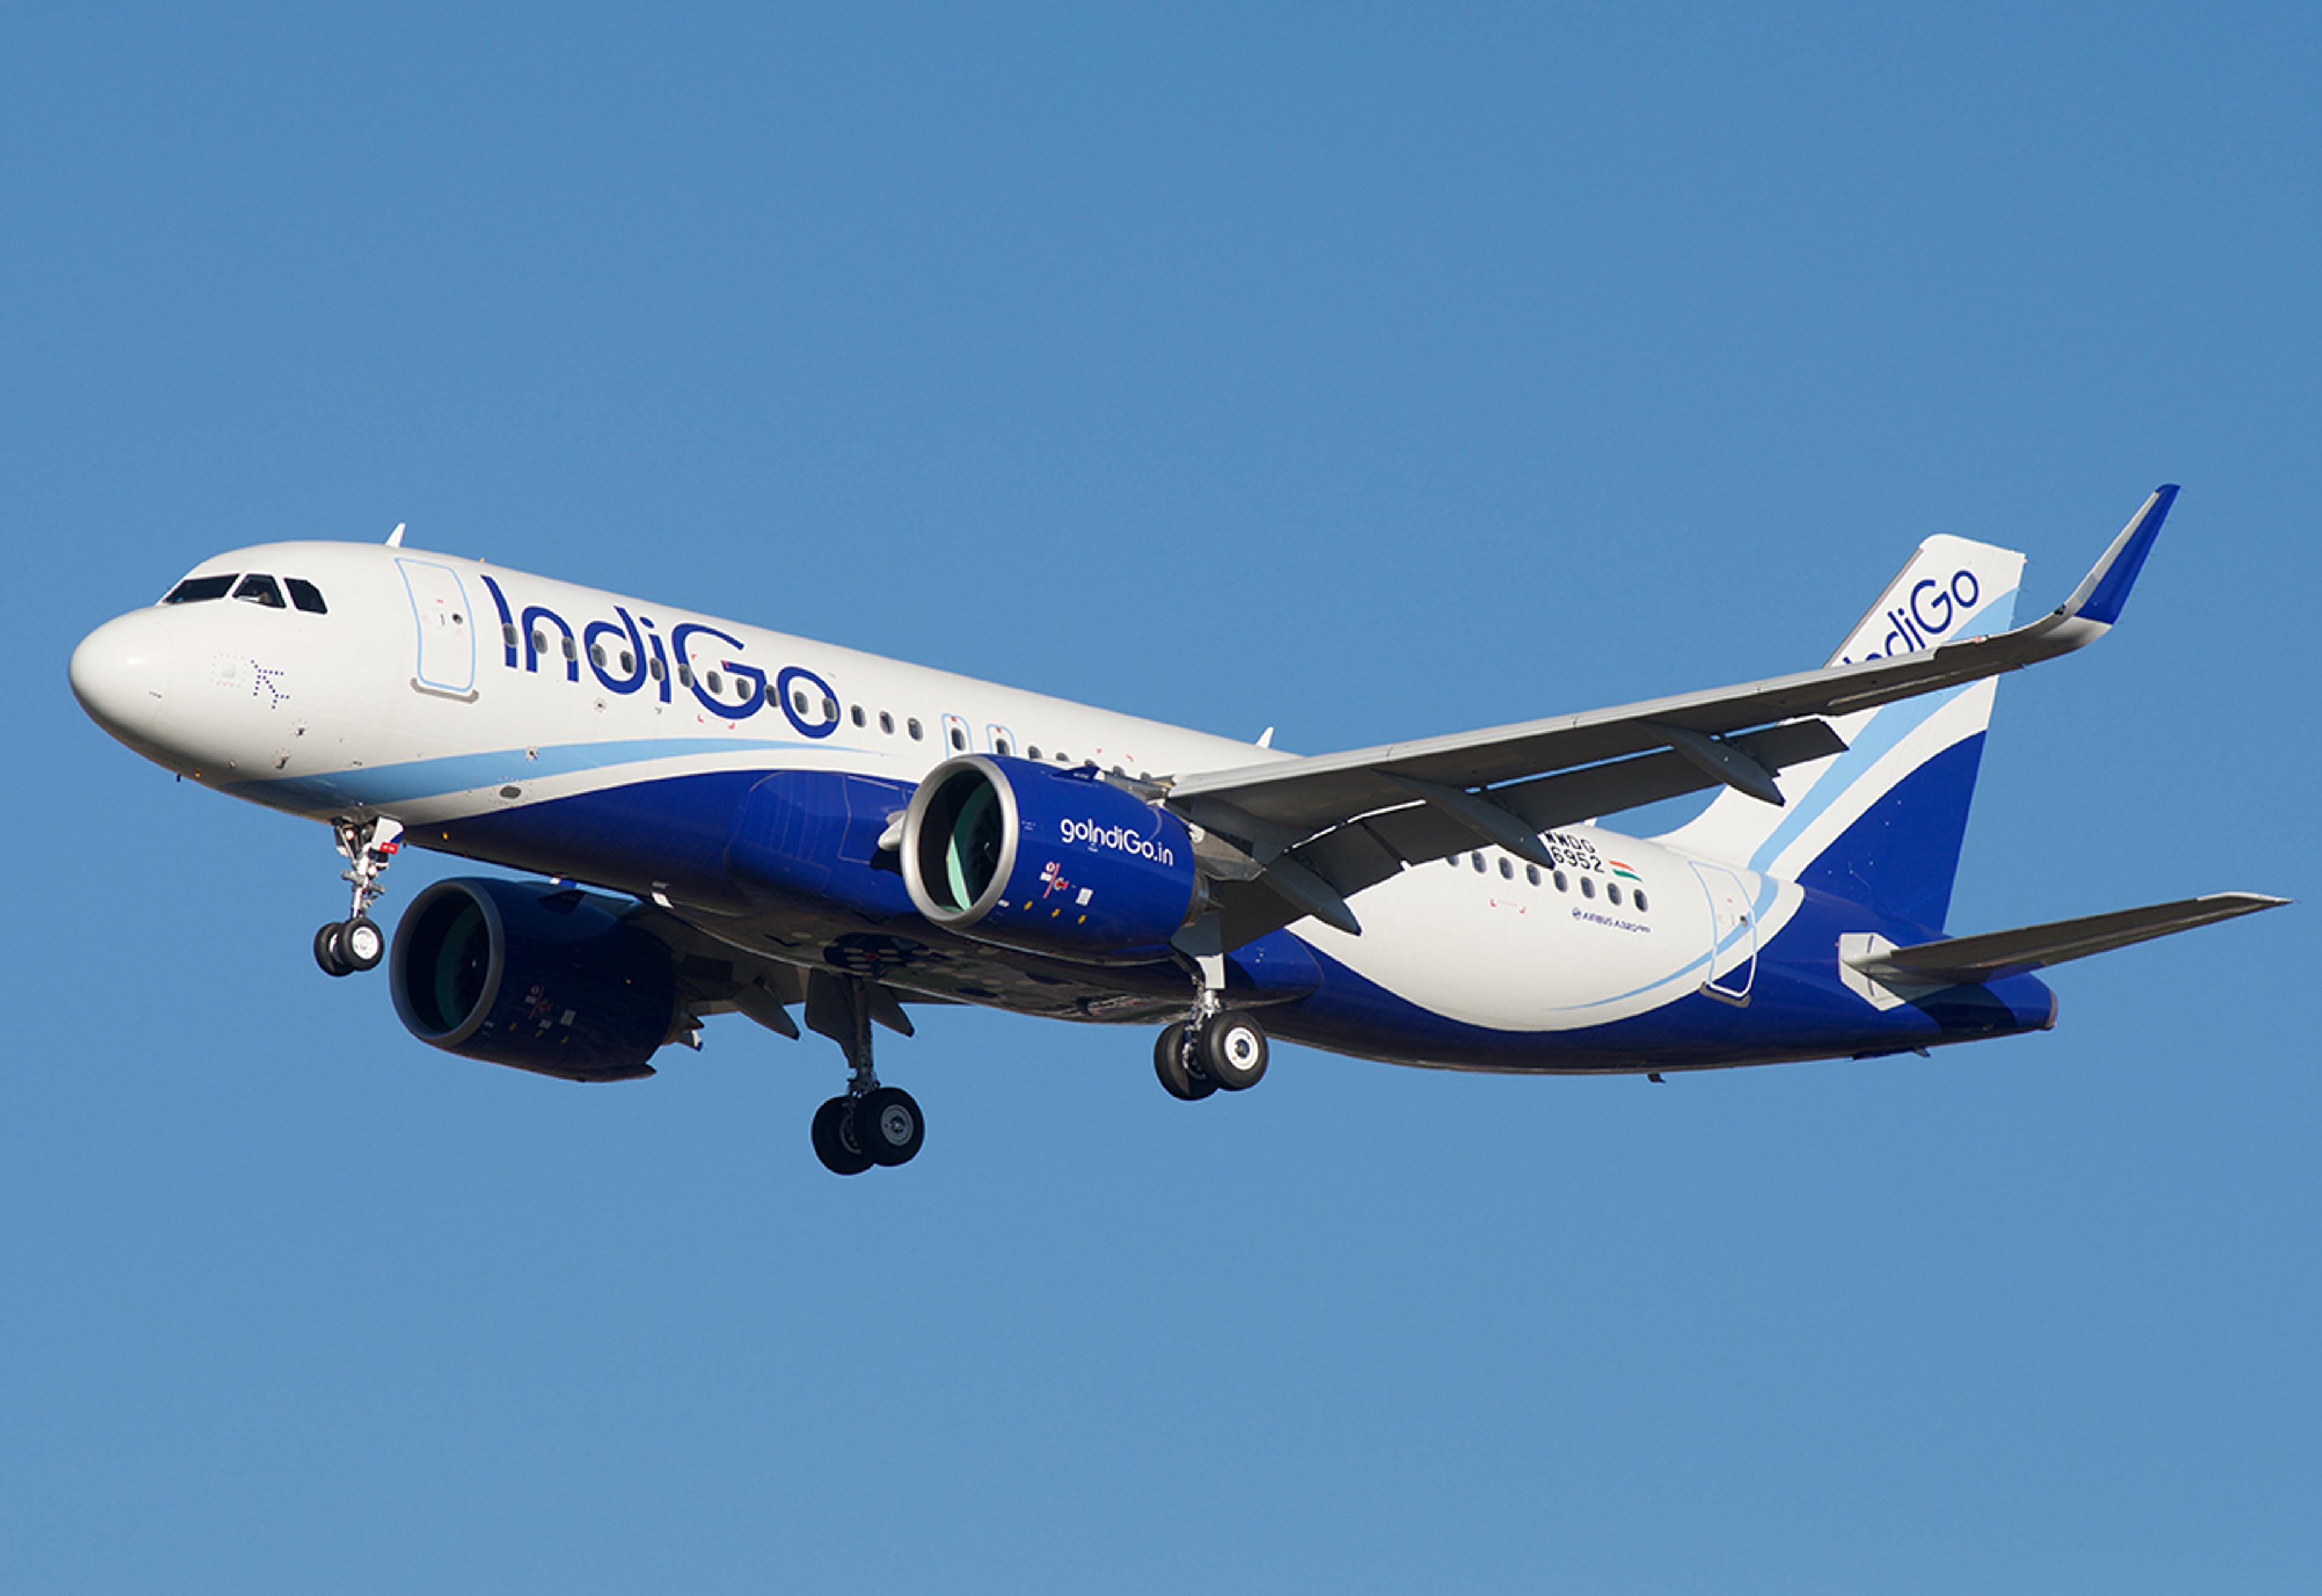 दीवाली और छठ से पहले इंडिगो का टिकट 1000 रुपए महंगा, अन्य विमानन कंपनियां भी बढ़ाएंगी किराया